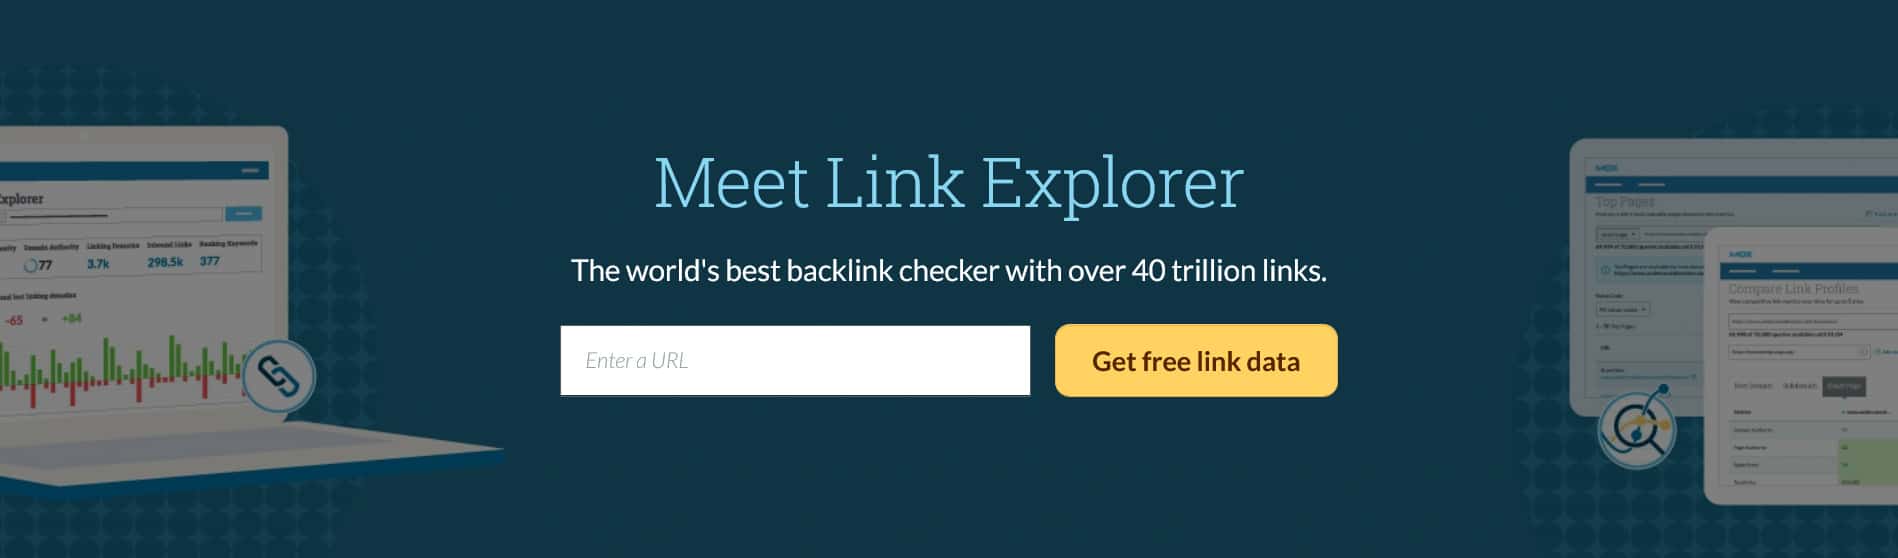 Moz Link Explorer 1